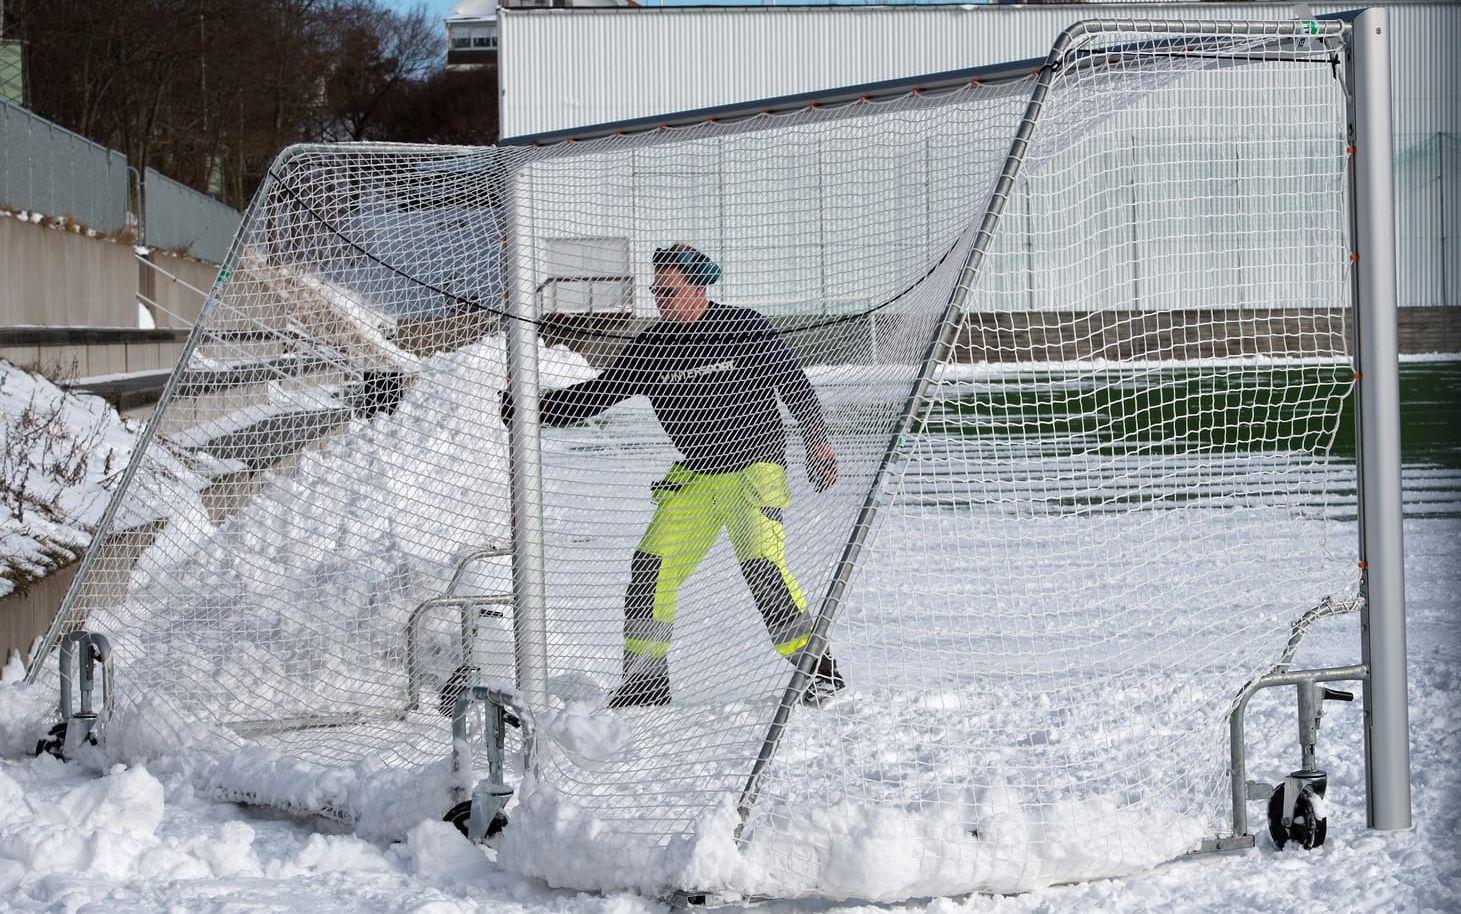 Urban Samuelsson hade fullt upp att ploga bort snön från planen. Foto: Lasse Edwartz